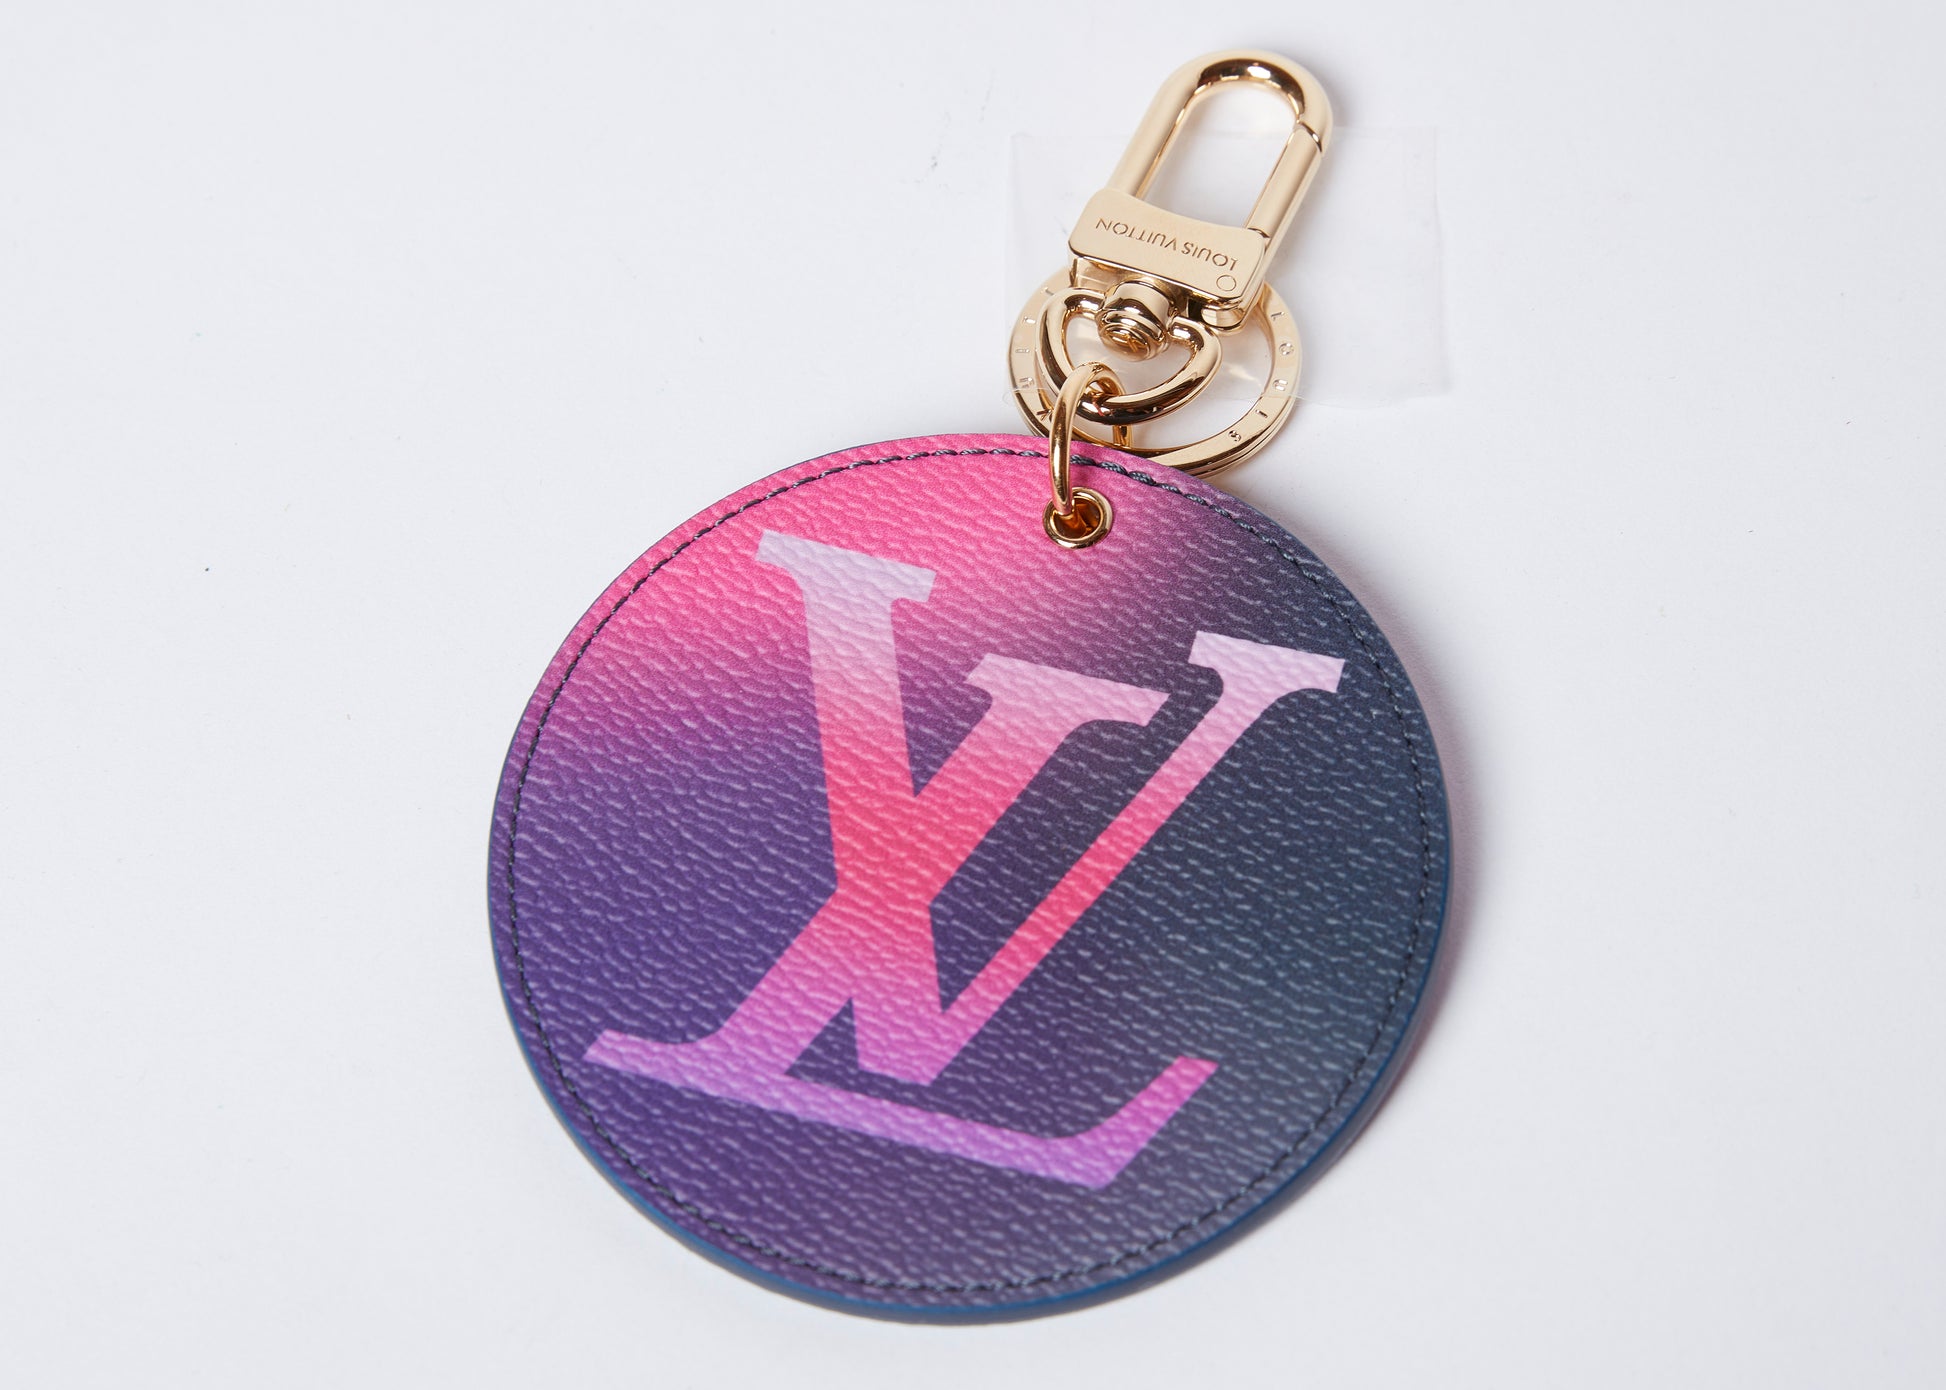 Louis Vuitton Fortune Cookie Bag Charm / Key Chain – honeylambhaus